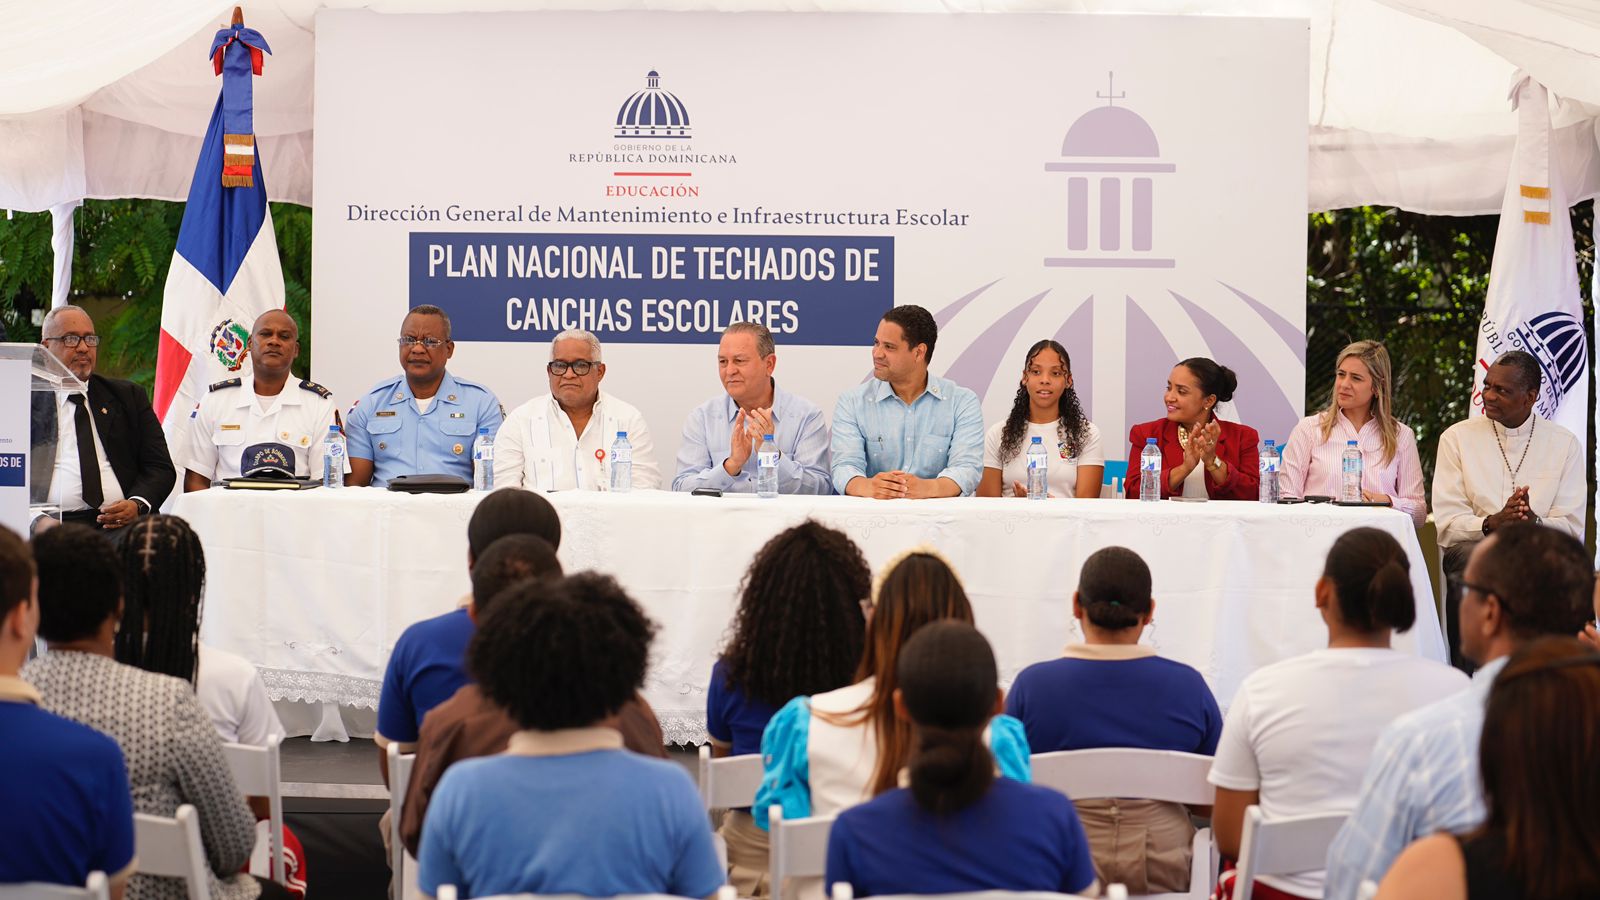 REPÚBLICA DOMINICANA: Ministerio de Educación deja iniciado Plan Nacional para Techados de Canchas Escolares a nivel nacional